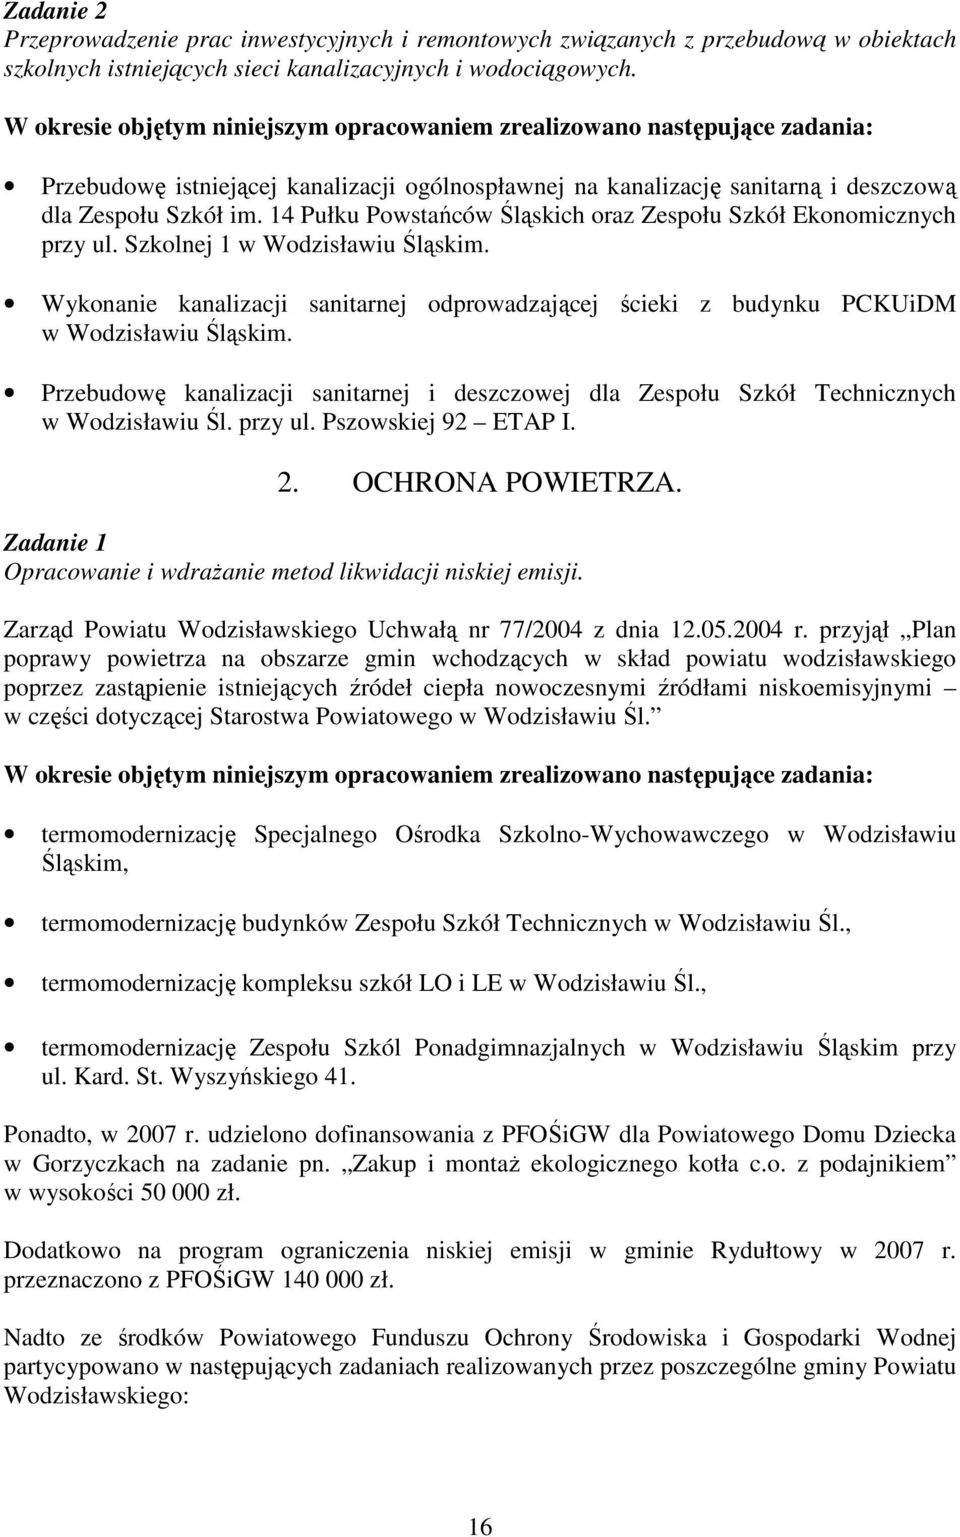 14 Pułku Powstańców Śląskich oraz Zespołu Szkół Ekonomicznych przy ul. Szkolnej 1 w Wodzisławiu Śląskim.